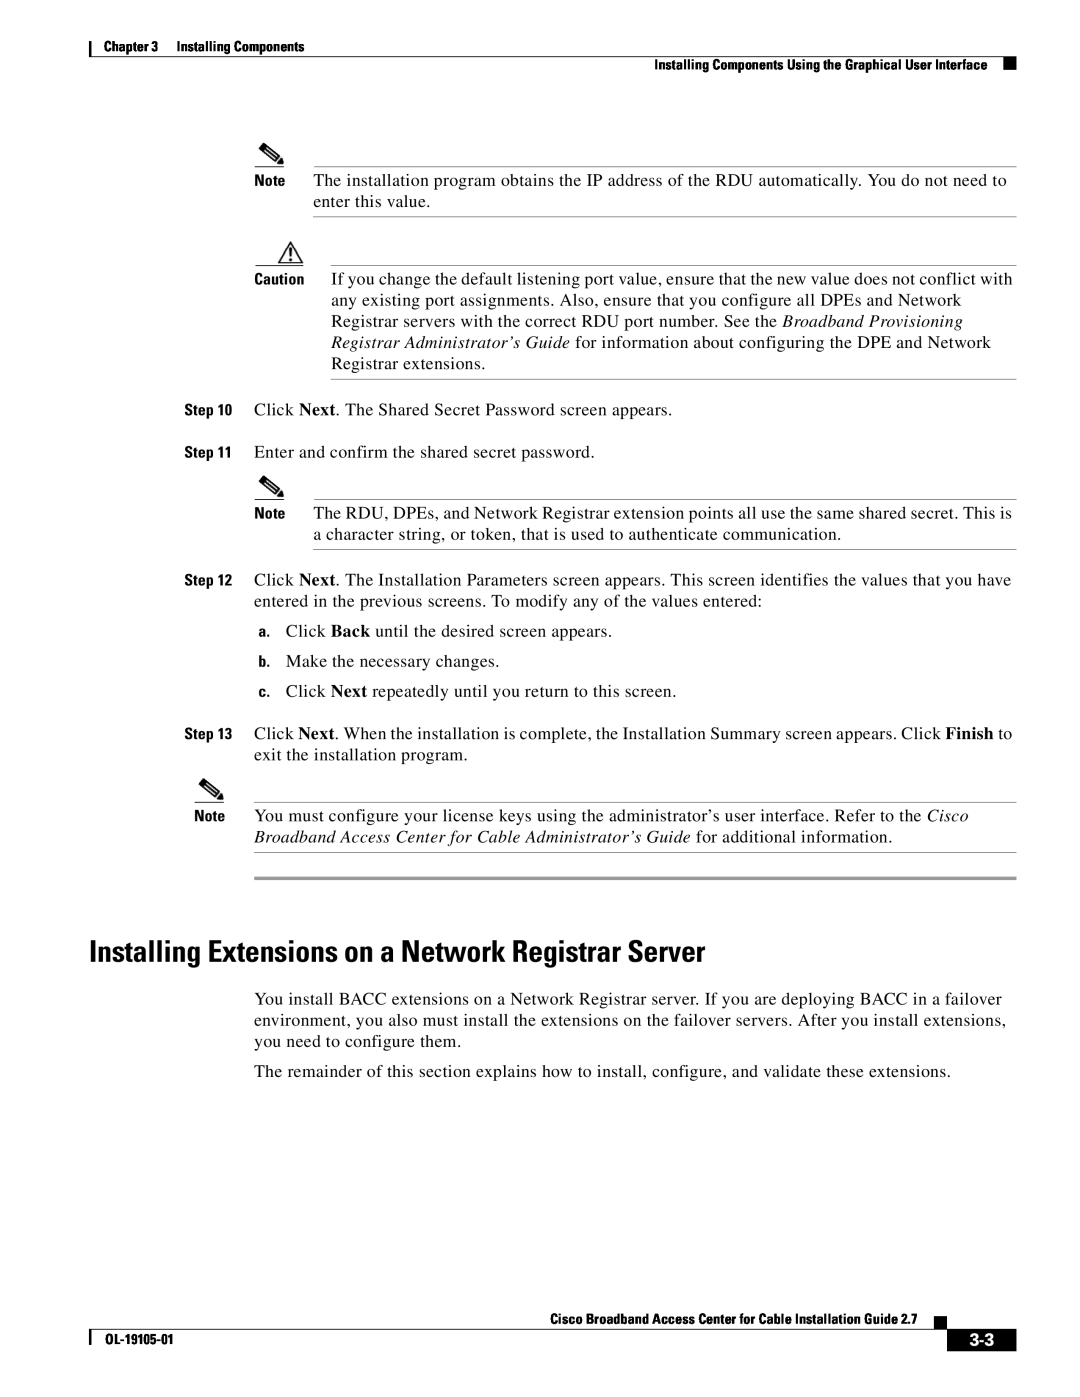 Cisco Systems Broadband Access Center manual Installing Extensions on a Network Registrar Server 